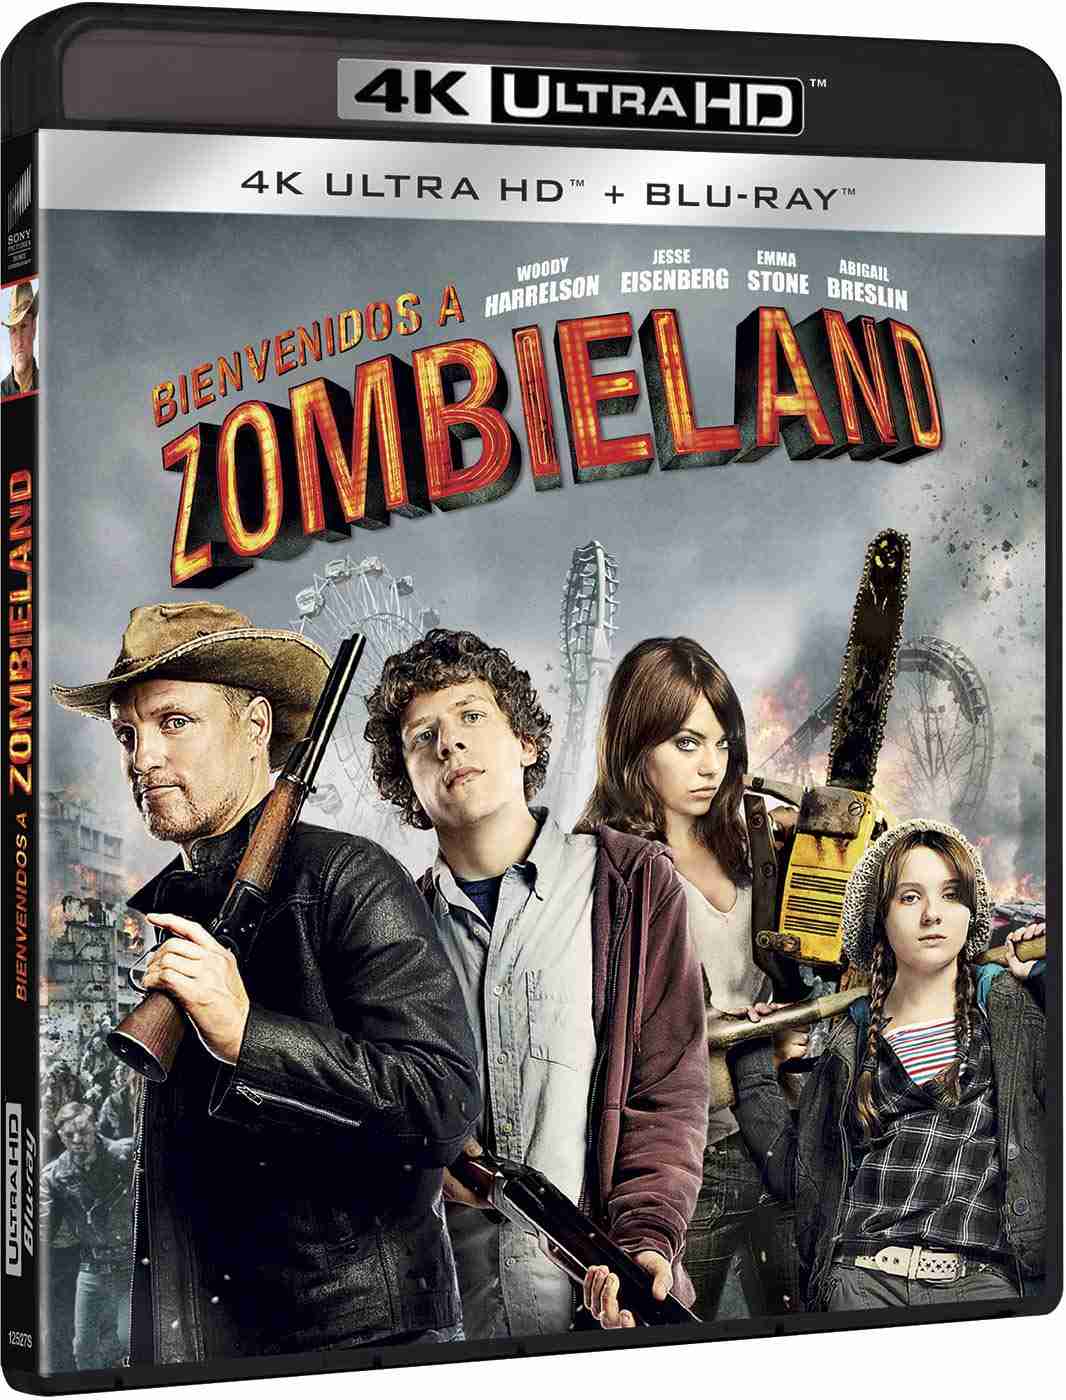 Zombieland - 4K Ultra HD Blu-ray